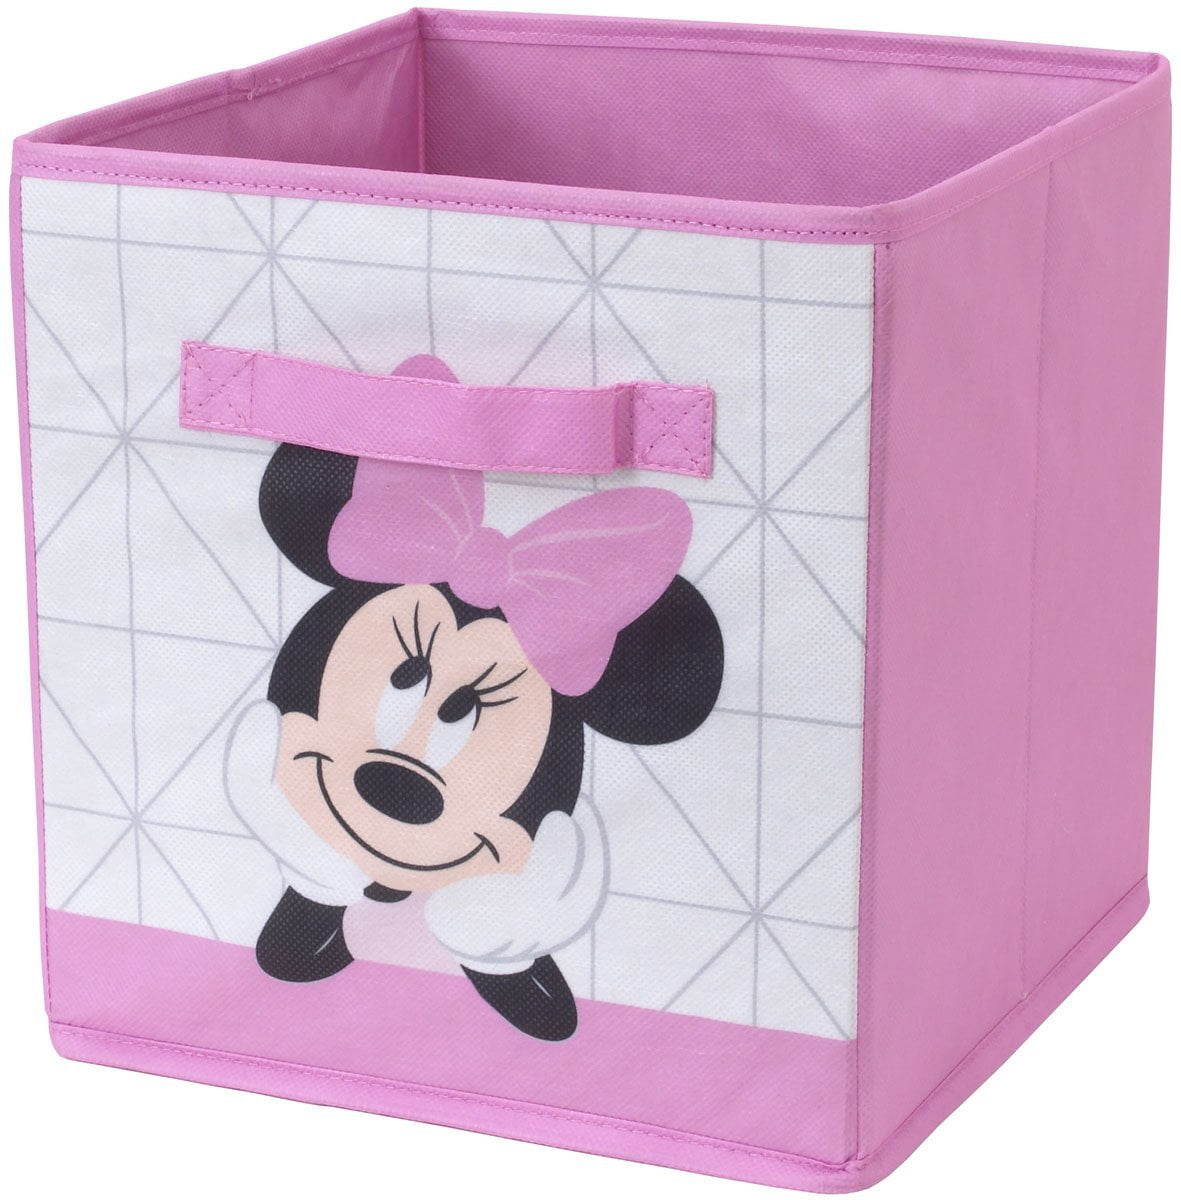 Disney Minnie Girls Bedroom Pop Up Folding Car Organizer Toy Storage Basket S94 